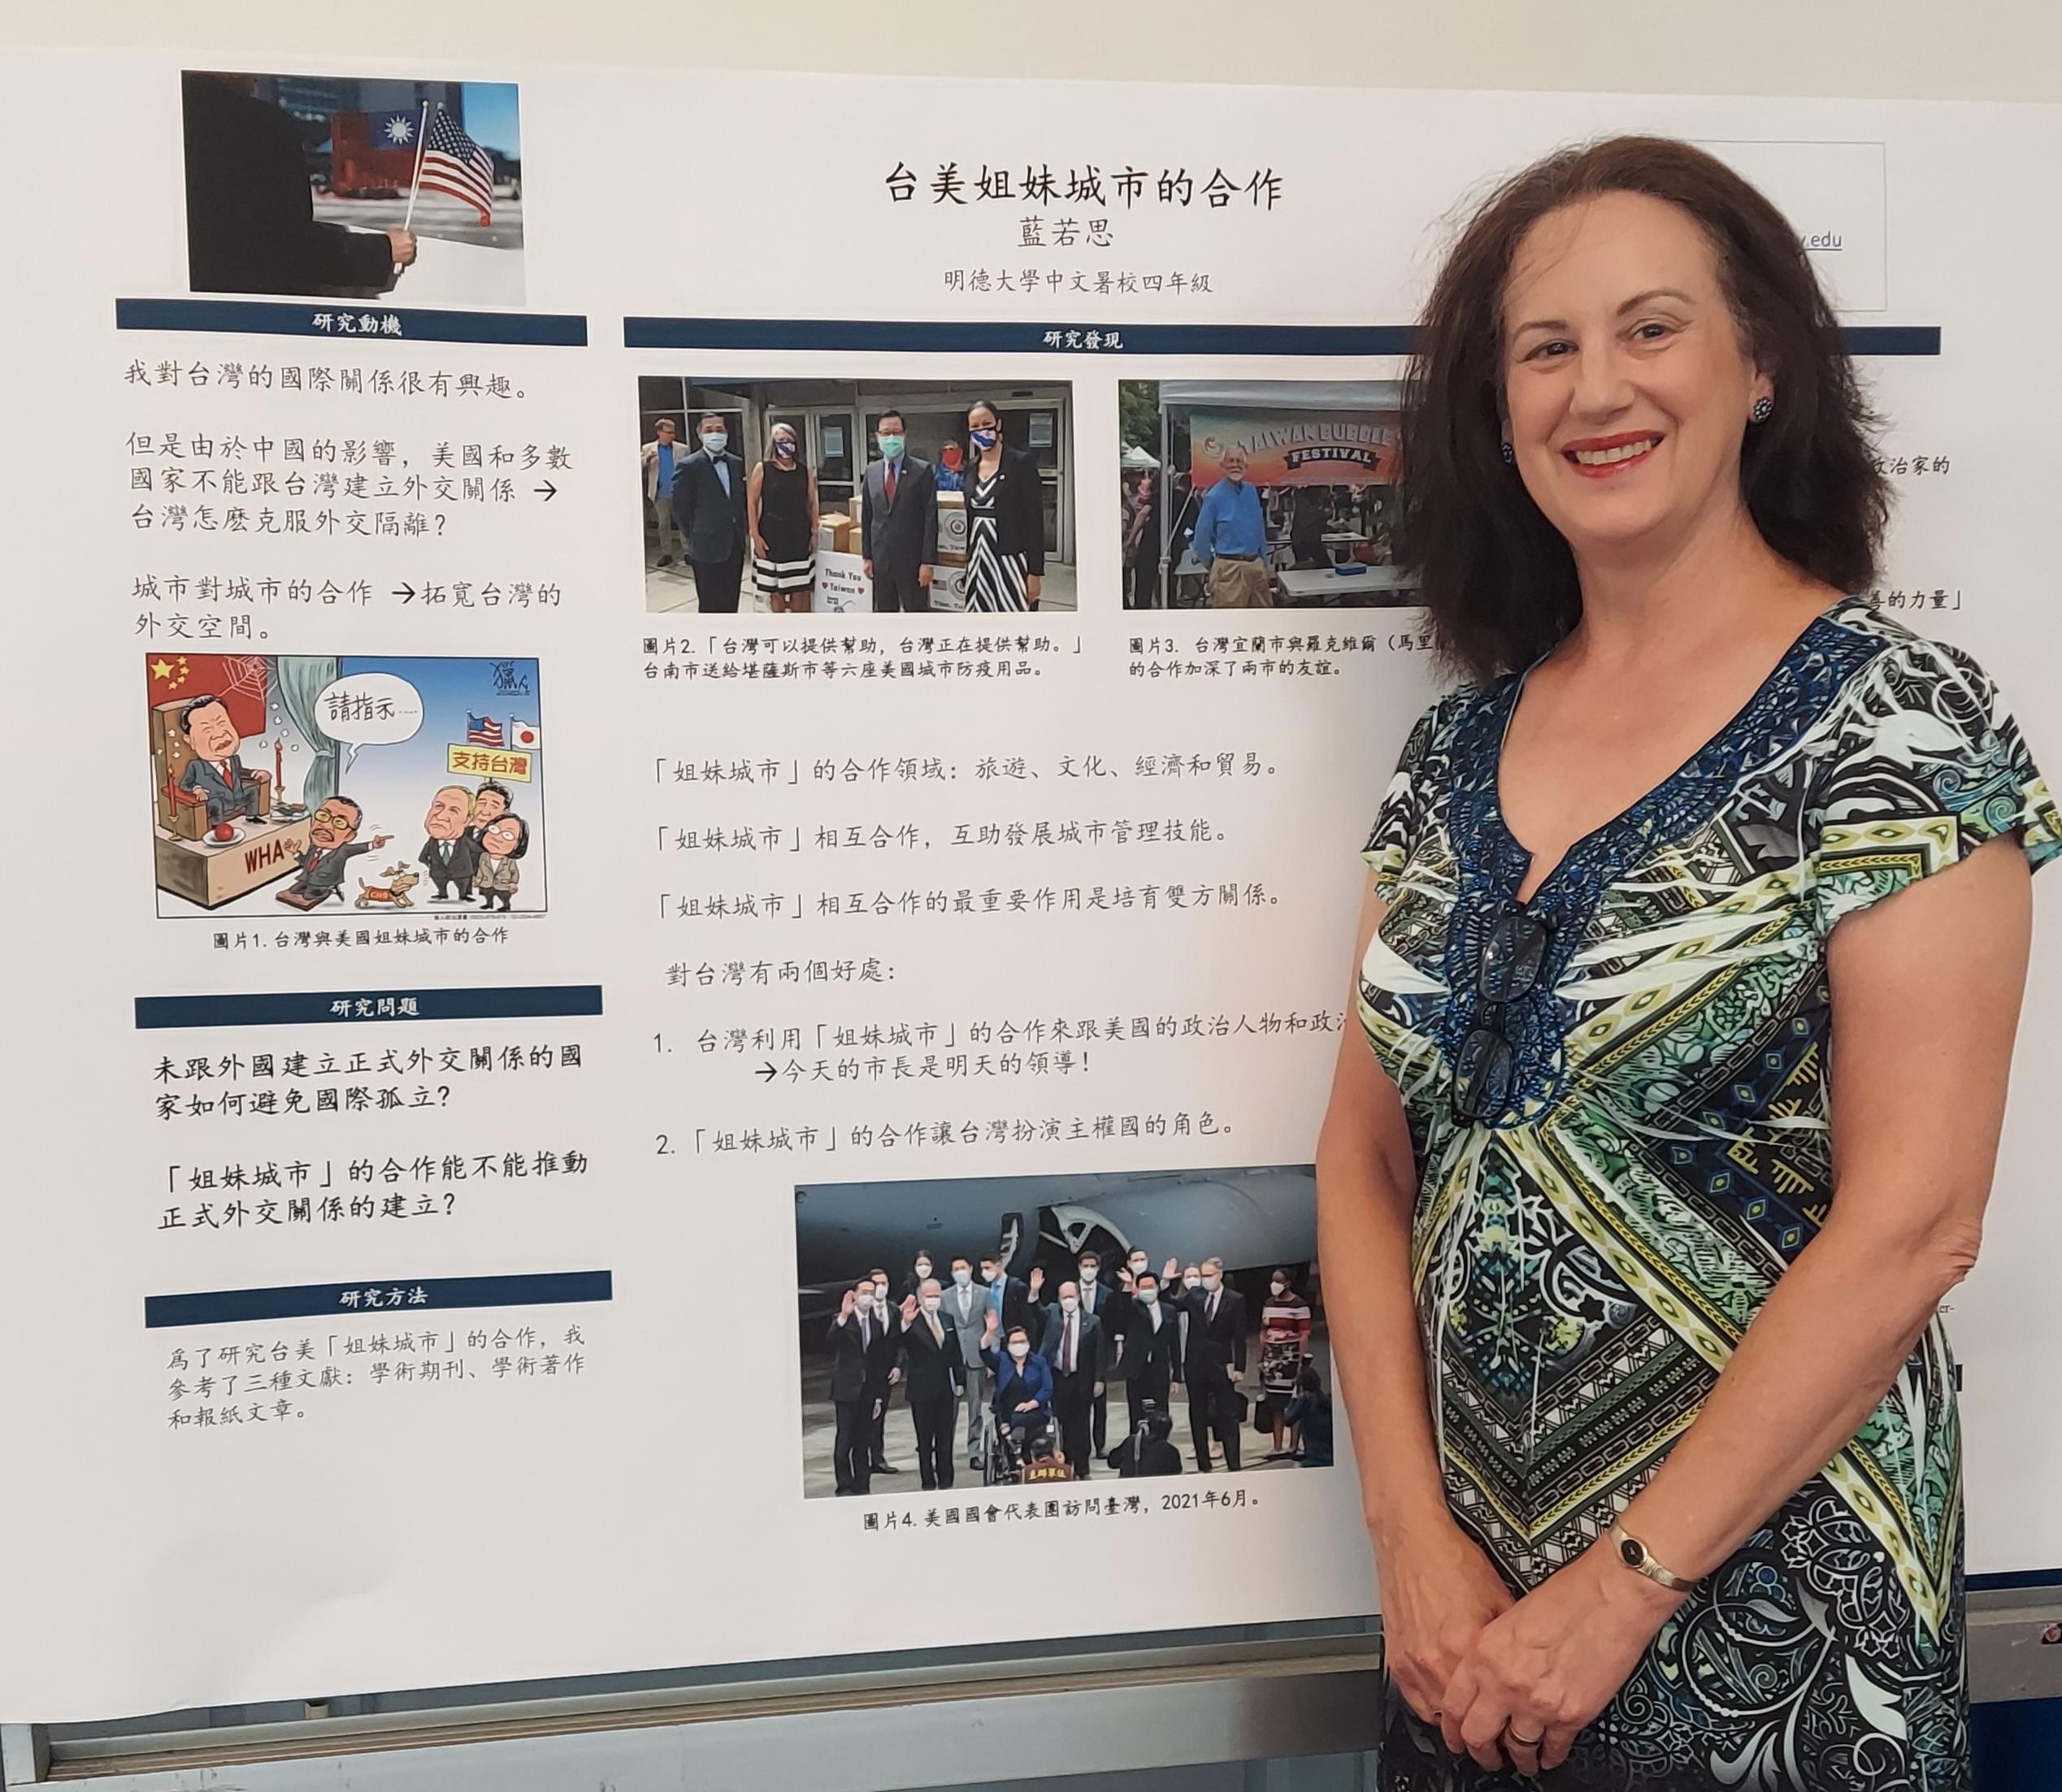 Larus präsentiert Forschungsergebnisse zu den Städtepartnerschaften zwischen den USA und Taiwan